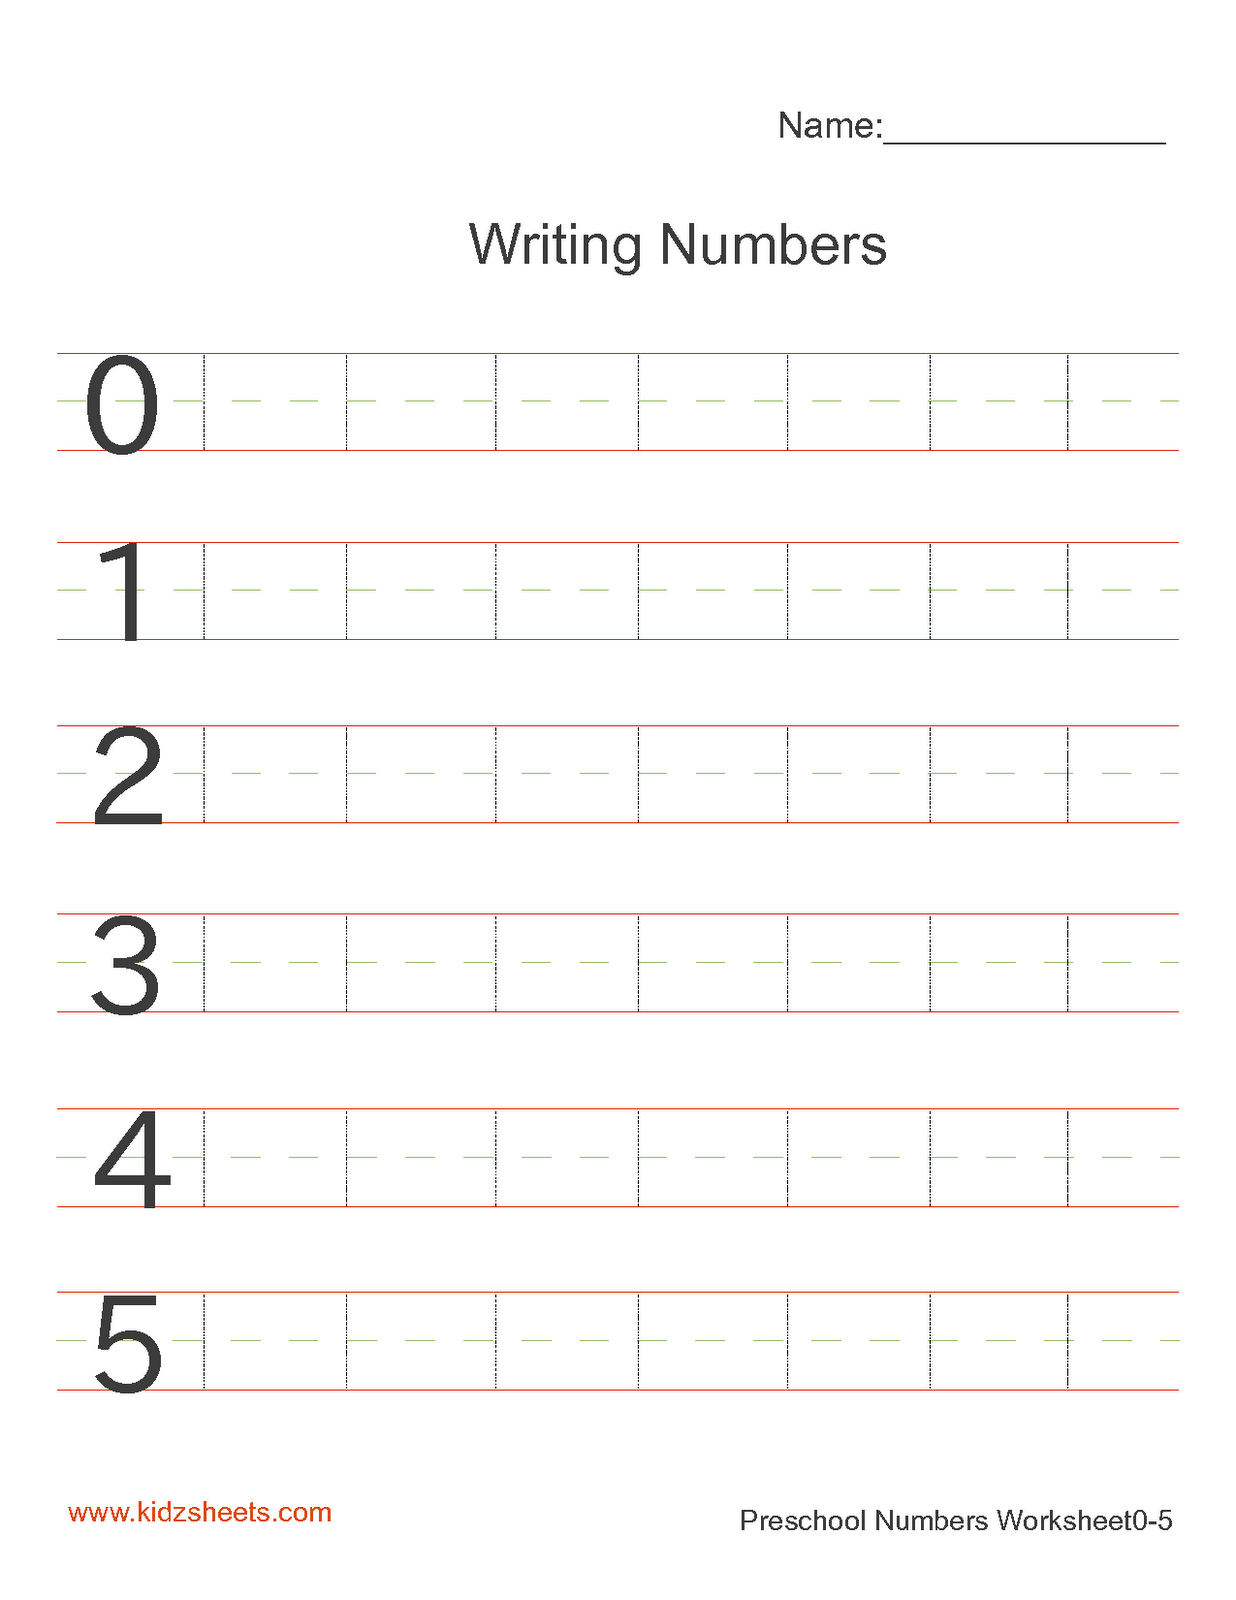 Kidz Worksheets Preschool Writing Numbers Worksheet1 Number Writing 